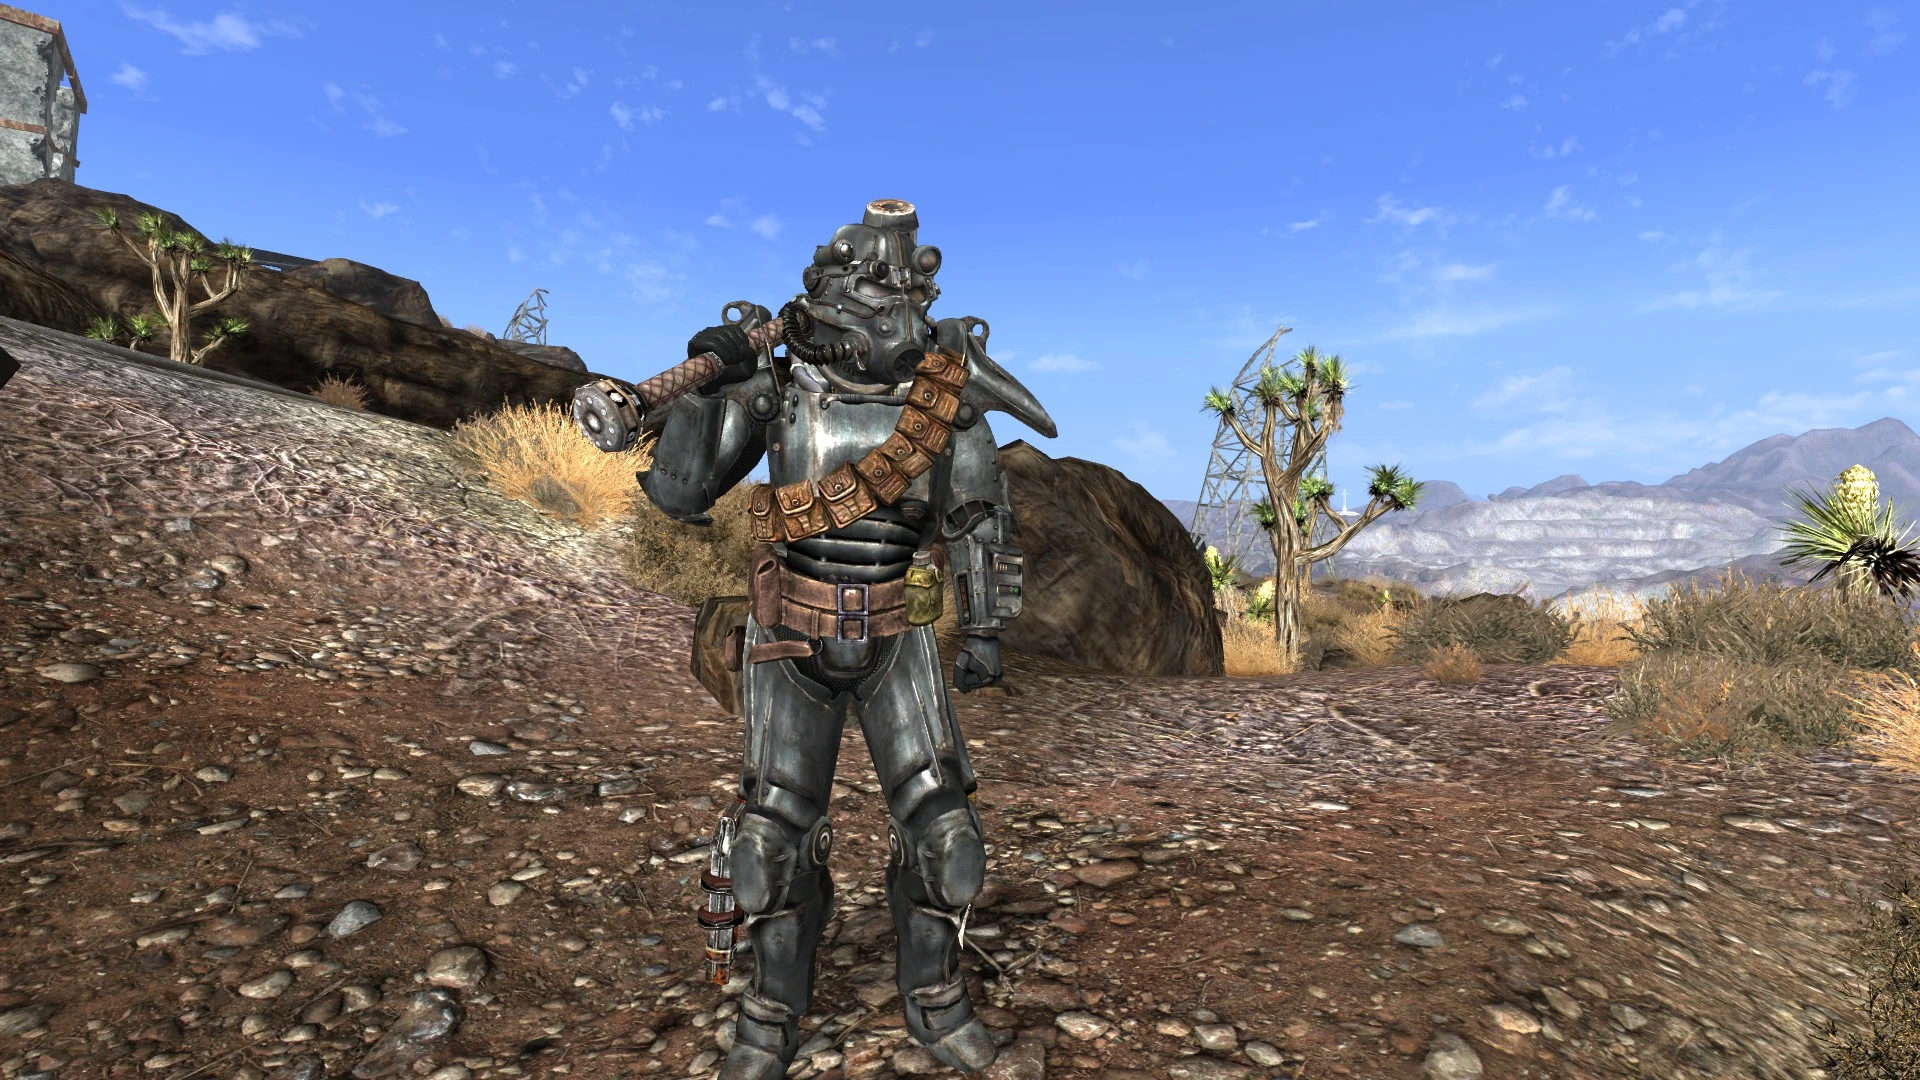 Умение носить силовую броню. T-45 Power Armor. Смловая броня фоллаут Нью Вега с. Fallout 4 силовая броня НКР. Fallout New Vegas Cryo Power Armor.